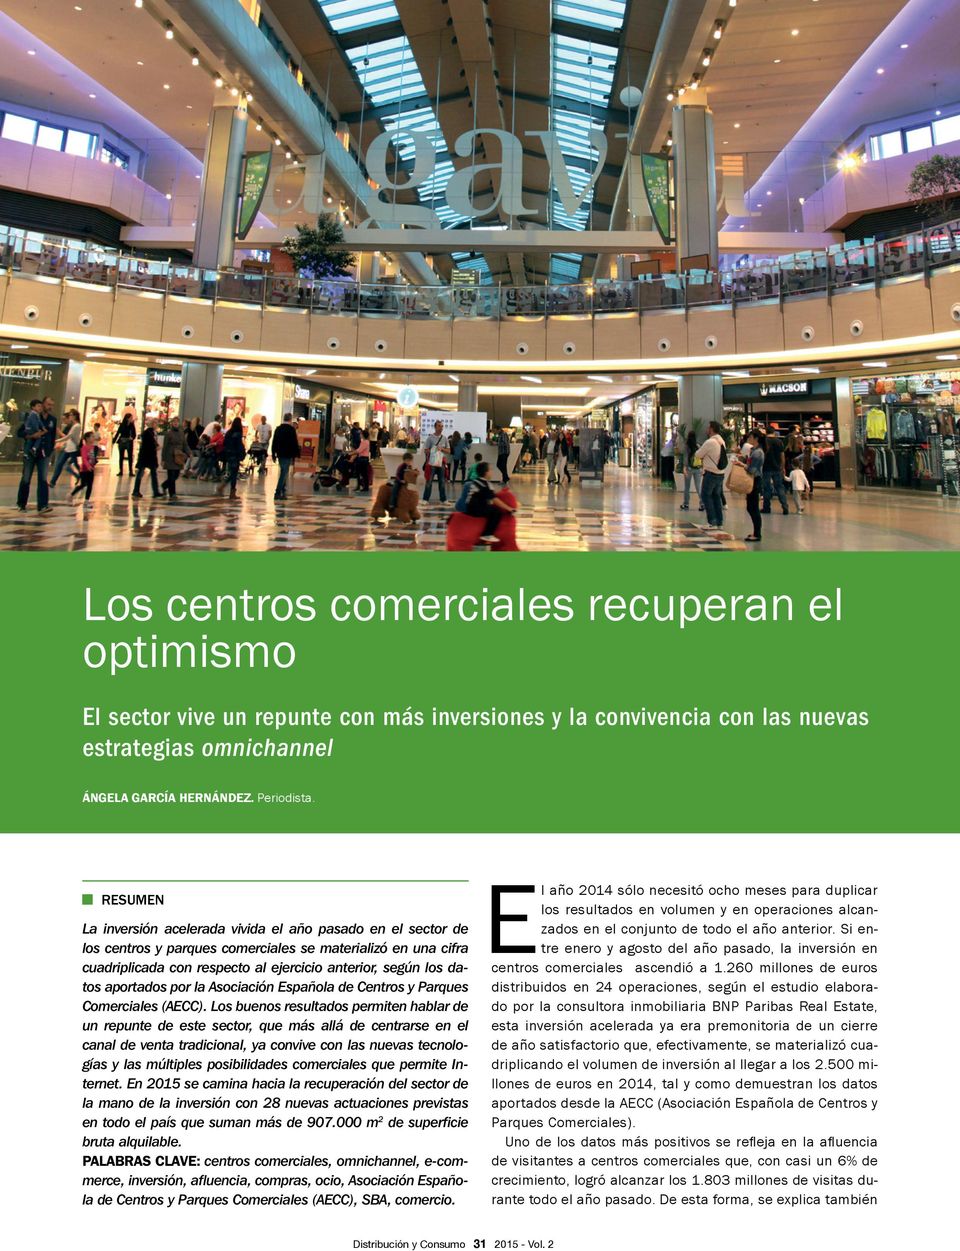 aportados por la Asociación Española de Centros y Parques Comerciales (AECC).